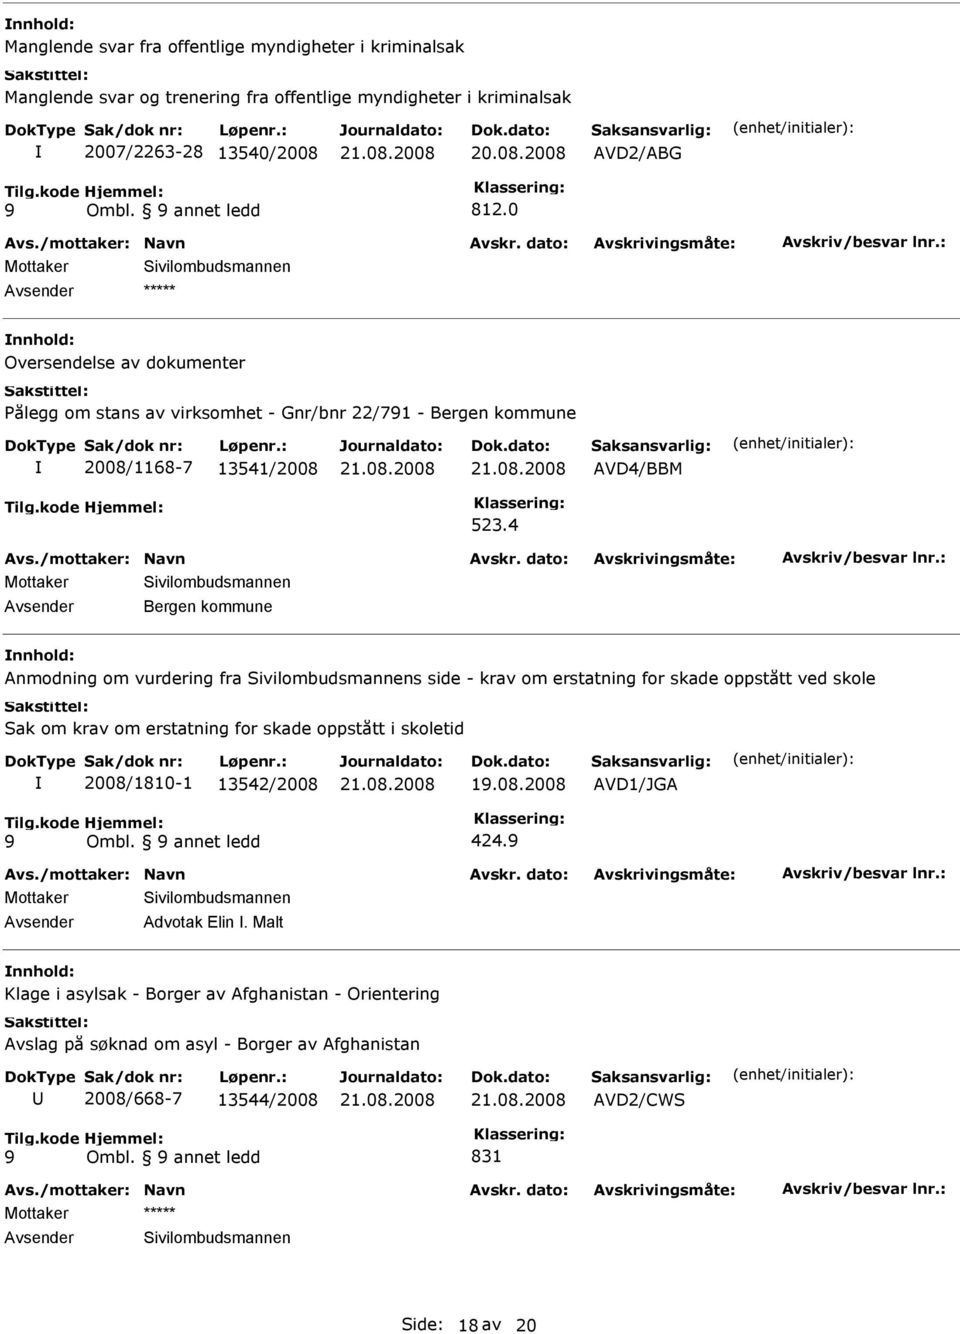 4 Avsender Bergen kommune Anmodning om vurdering fra Sivilombudsmannens side - krav om erstatning for skade oppstått ved skole Sak om krav om erstatning for skade oppstått i skoletid 2008/1810-1